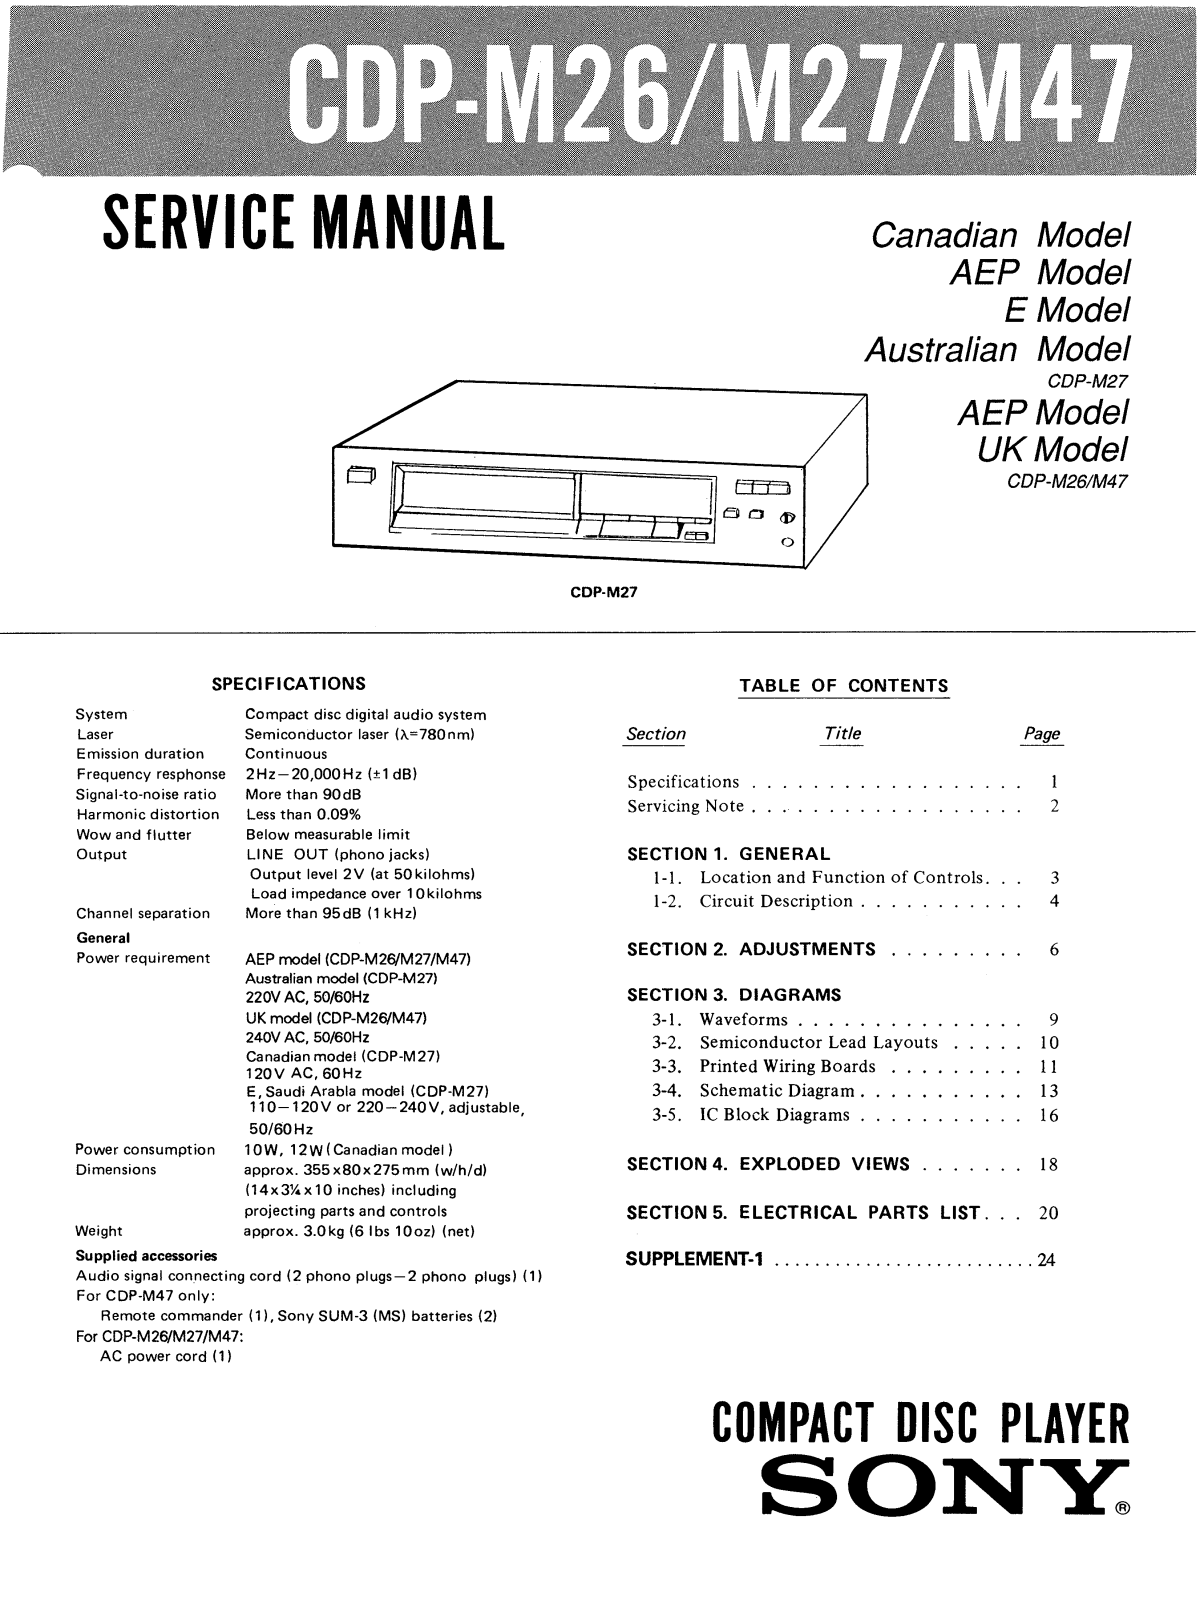 Sony CDPM-47 Service manual